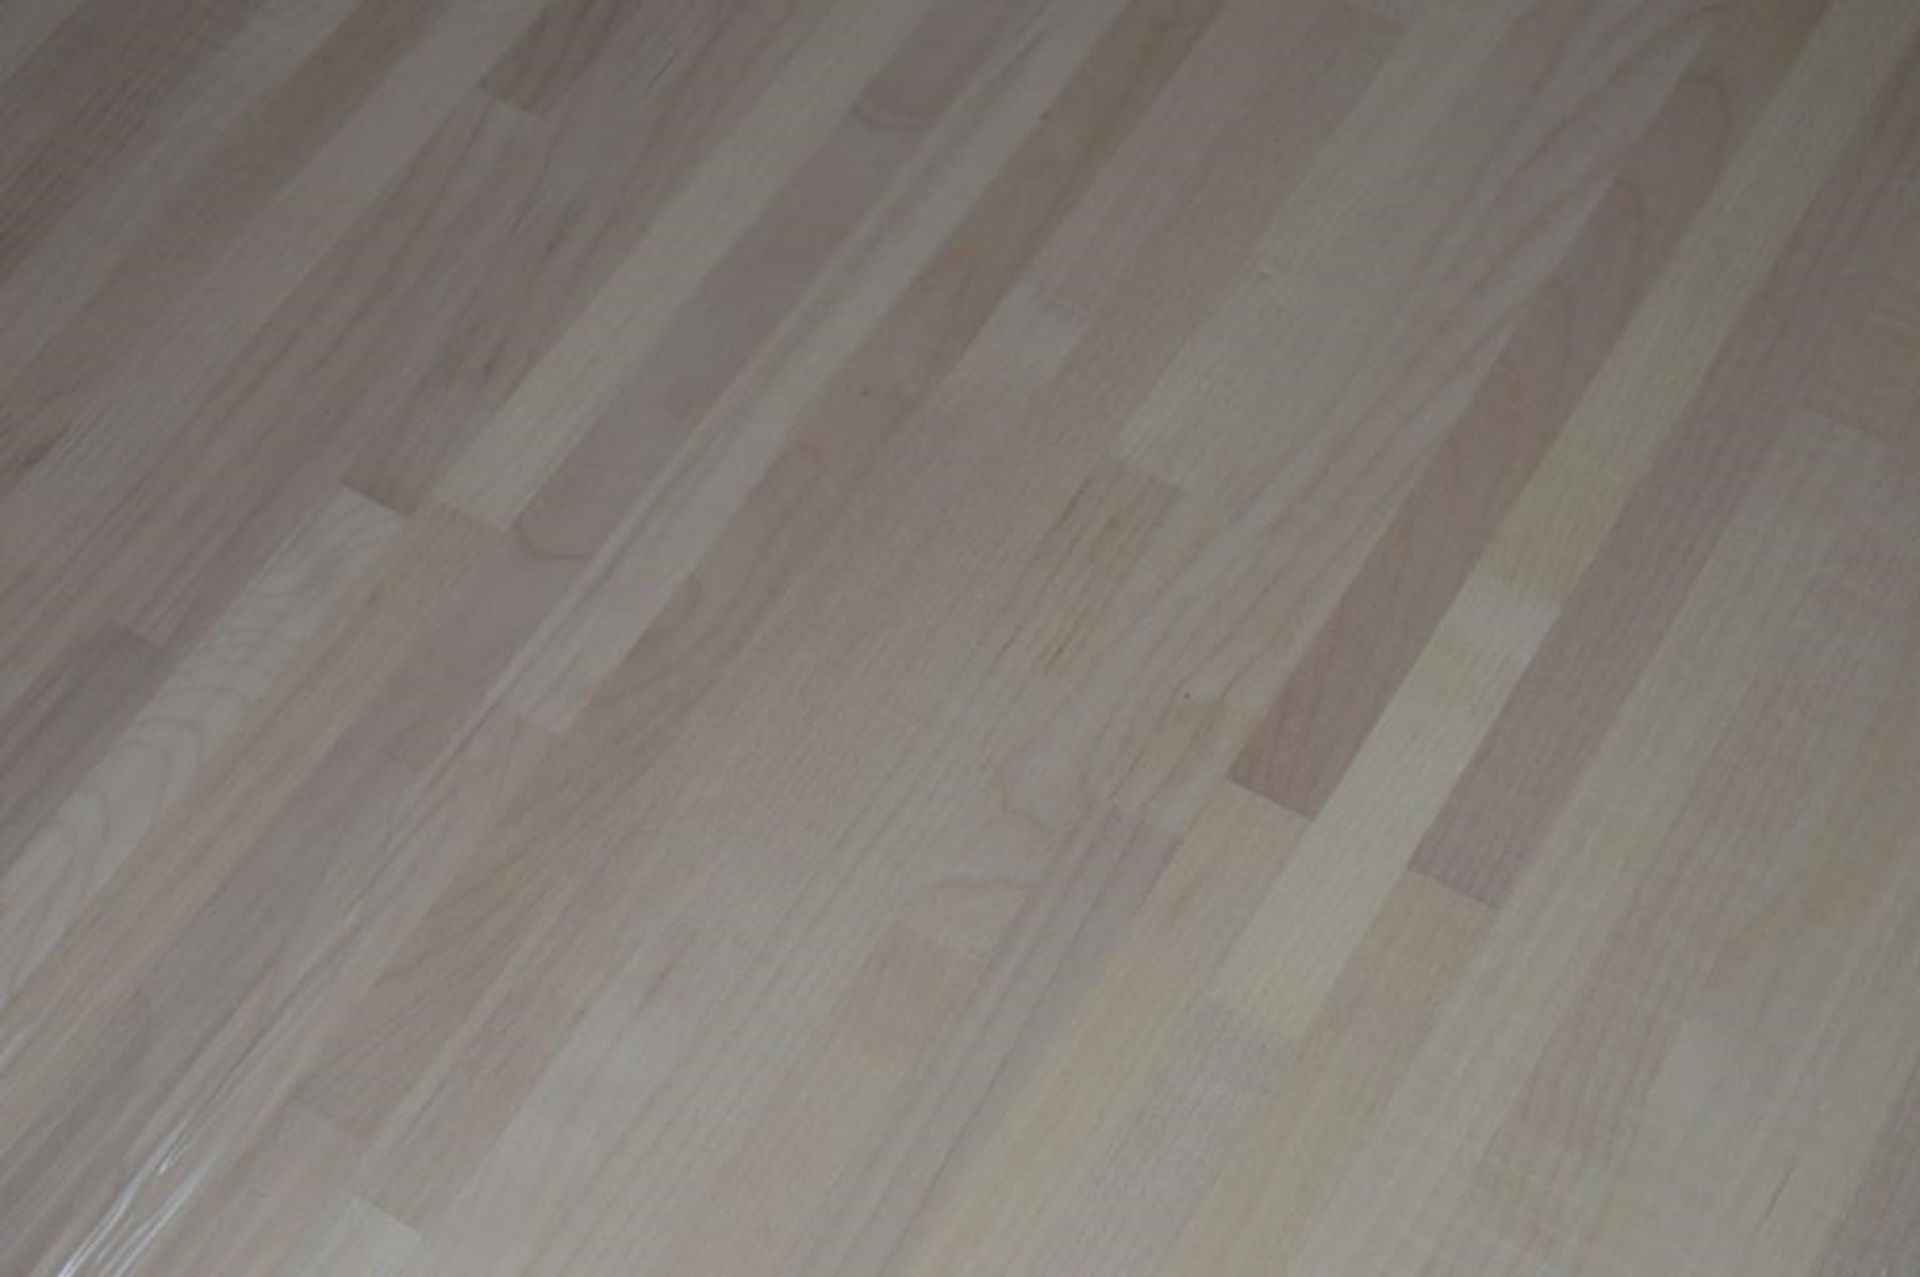 1 x Solid Wood Kitchen Worktop - EUROPEAN MAPLE - Maple Blockwood Kitchen Worktop - Size: 4000 x 650 - Image 5 of 5